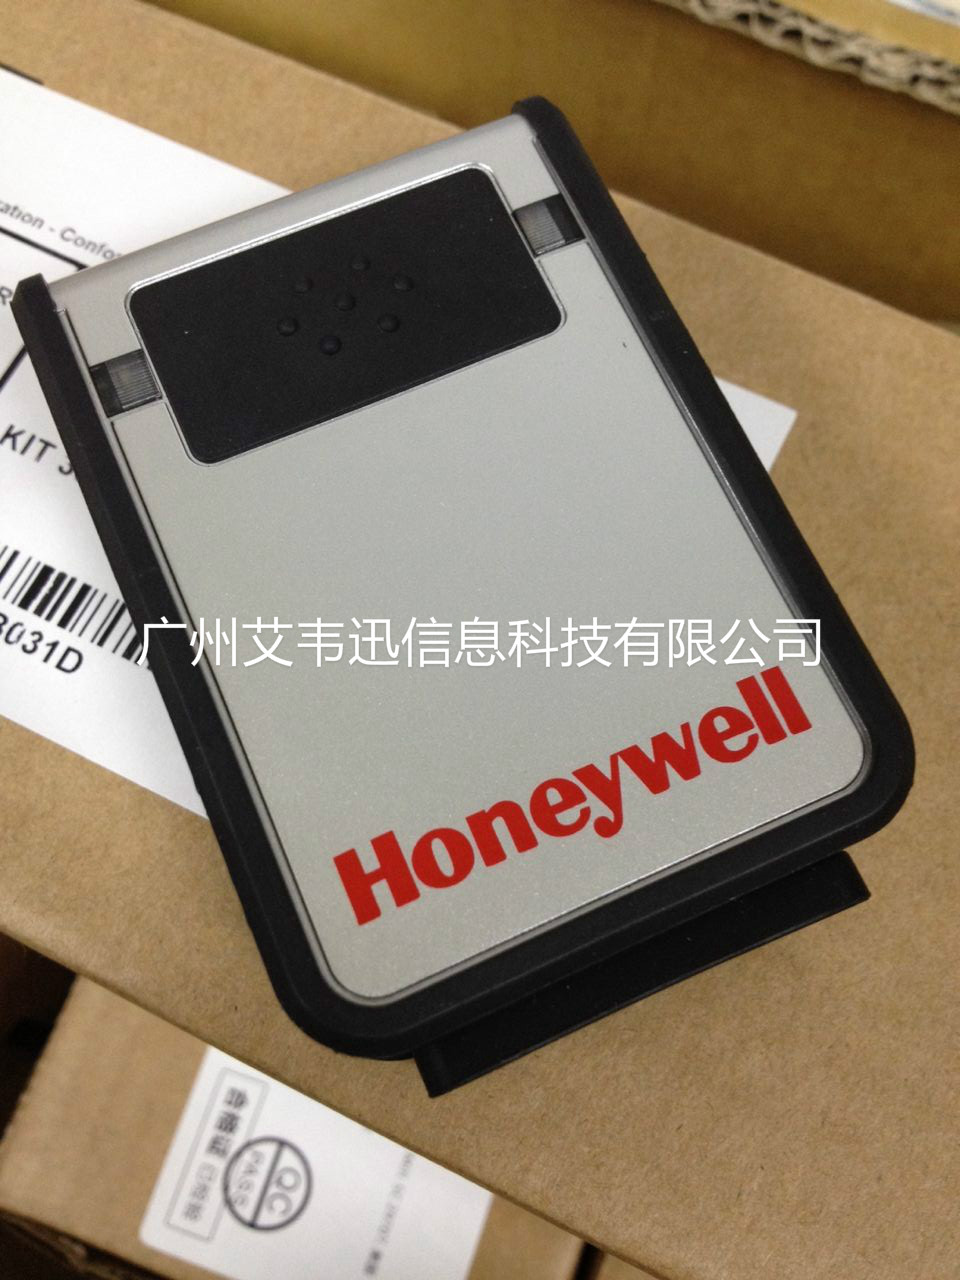 Honeywell 3310G扫描器助力深圳市某电子科技有限企业